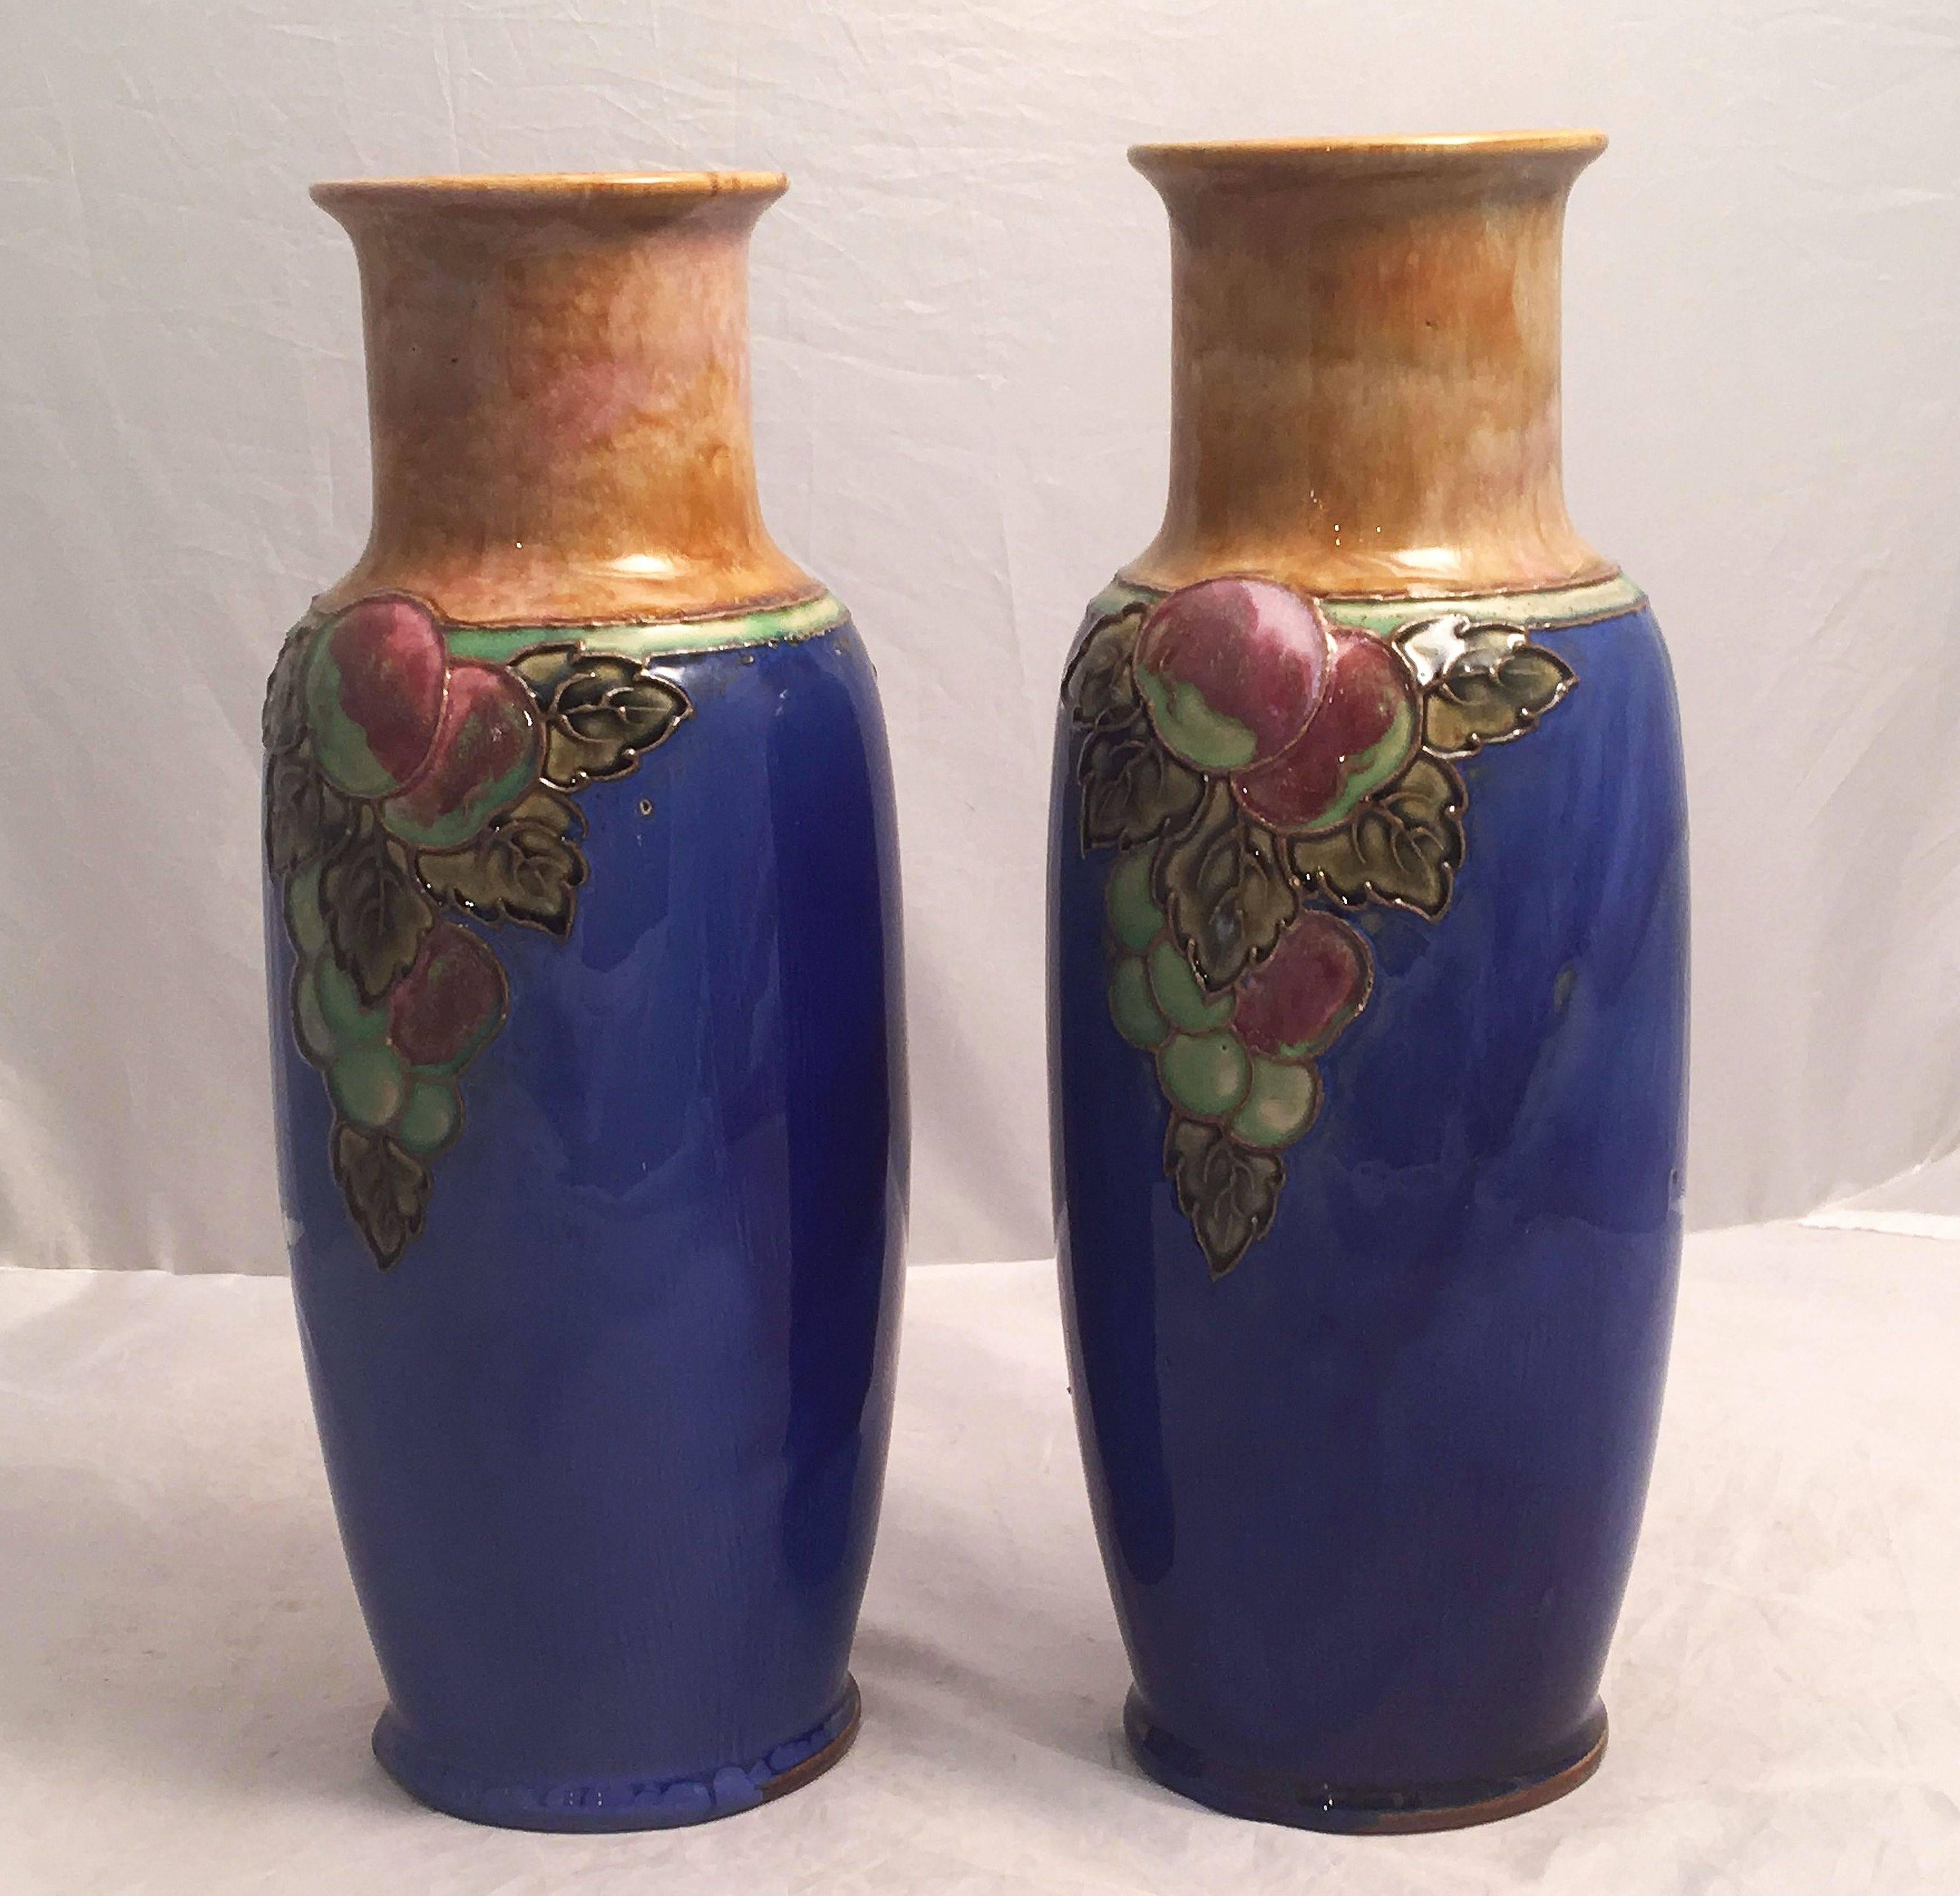 Vernissé Vases à grappes de raisins Royal Doulton de la période Arts and Crafts en vente